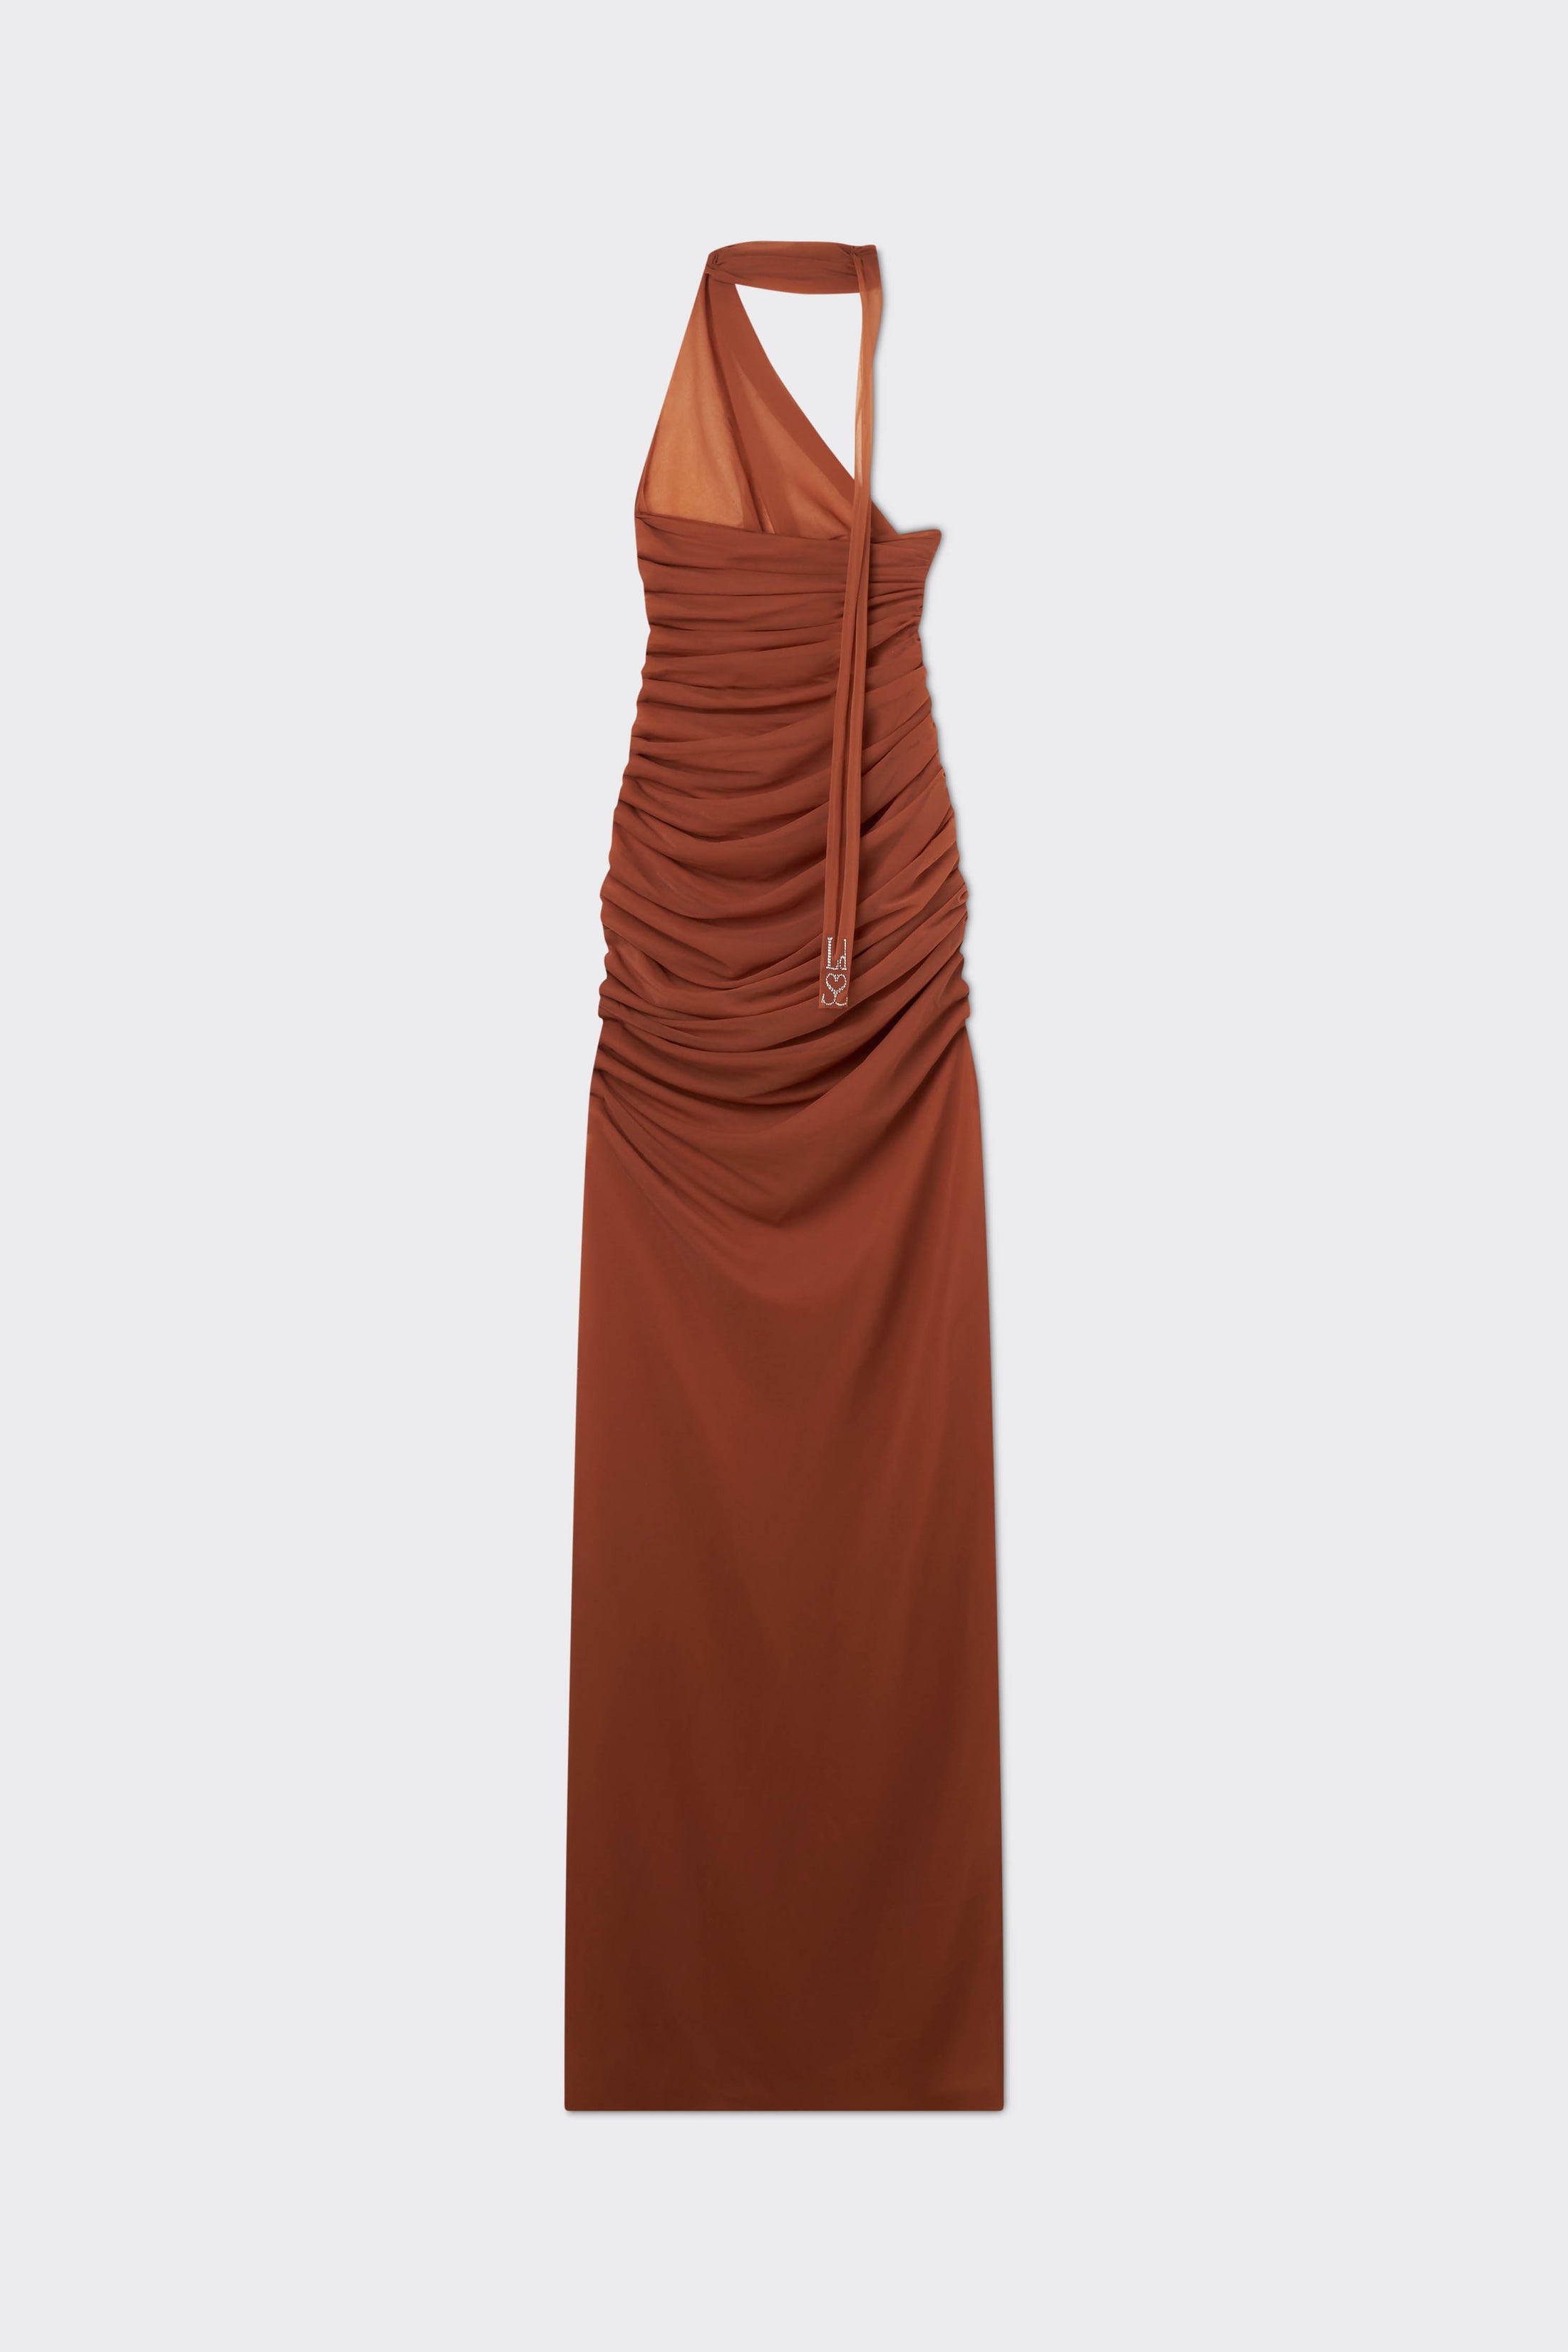 Chestnut Terracotta Halter Dress